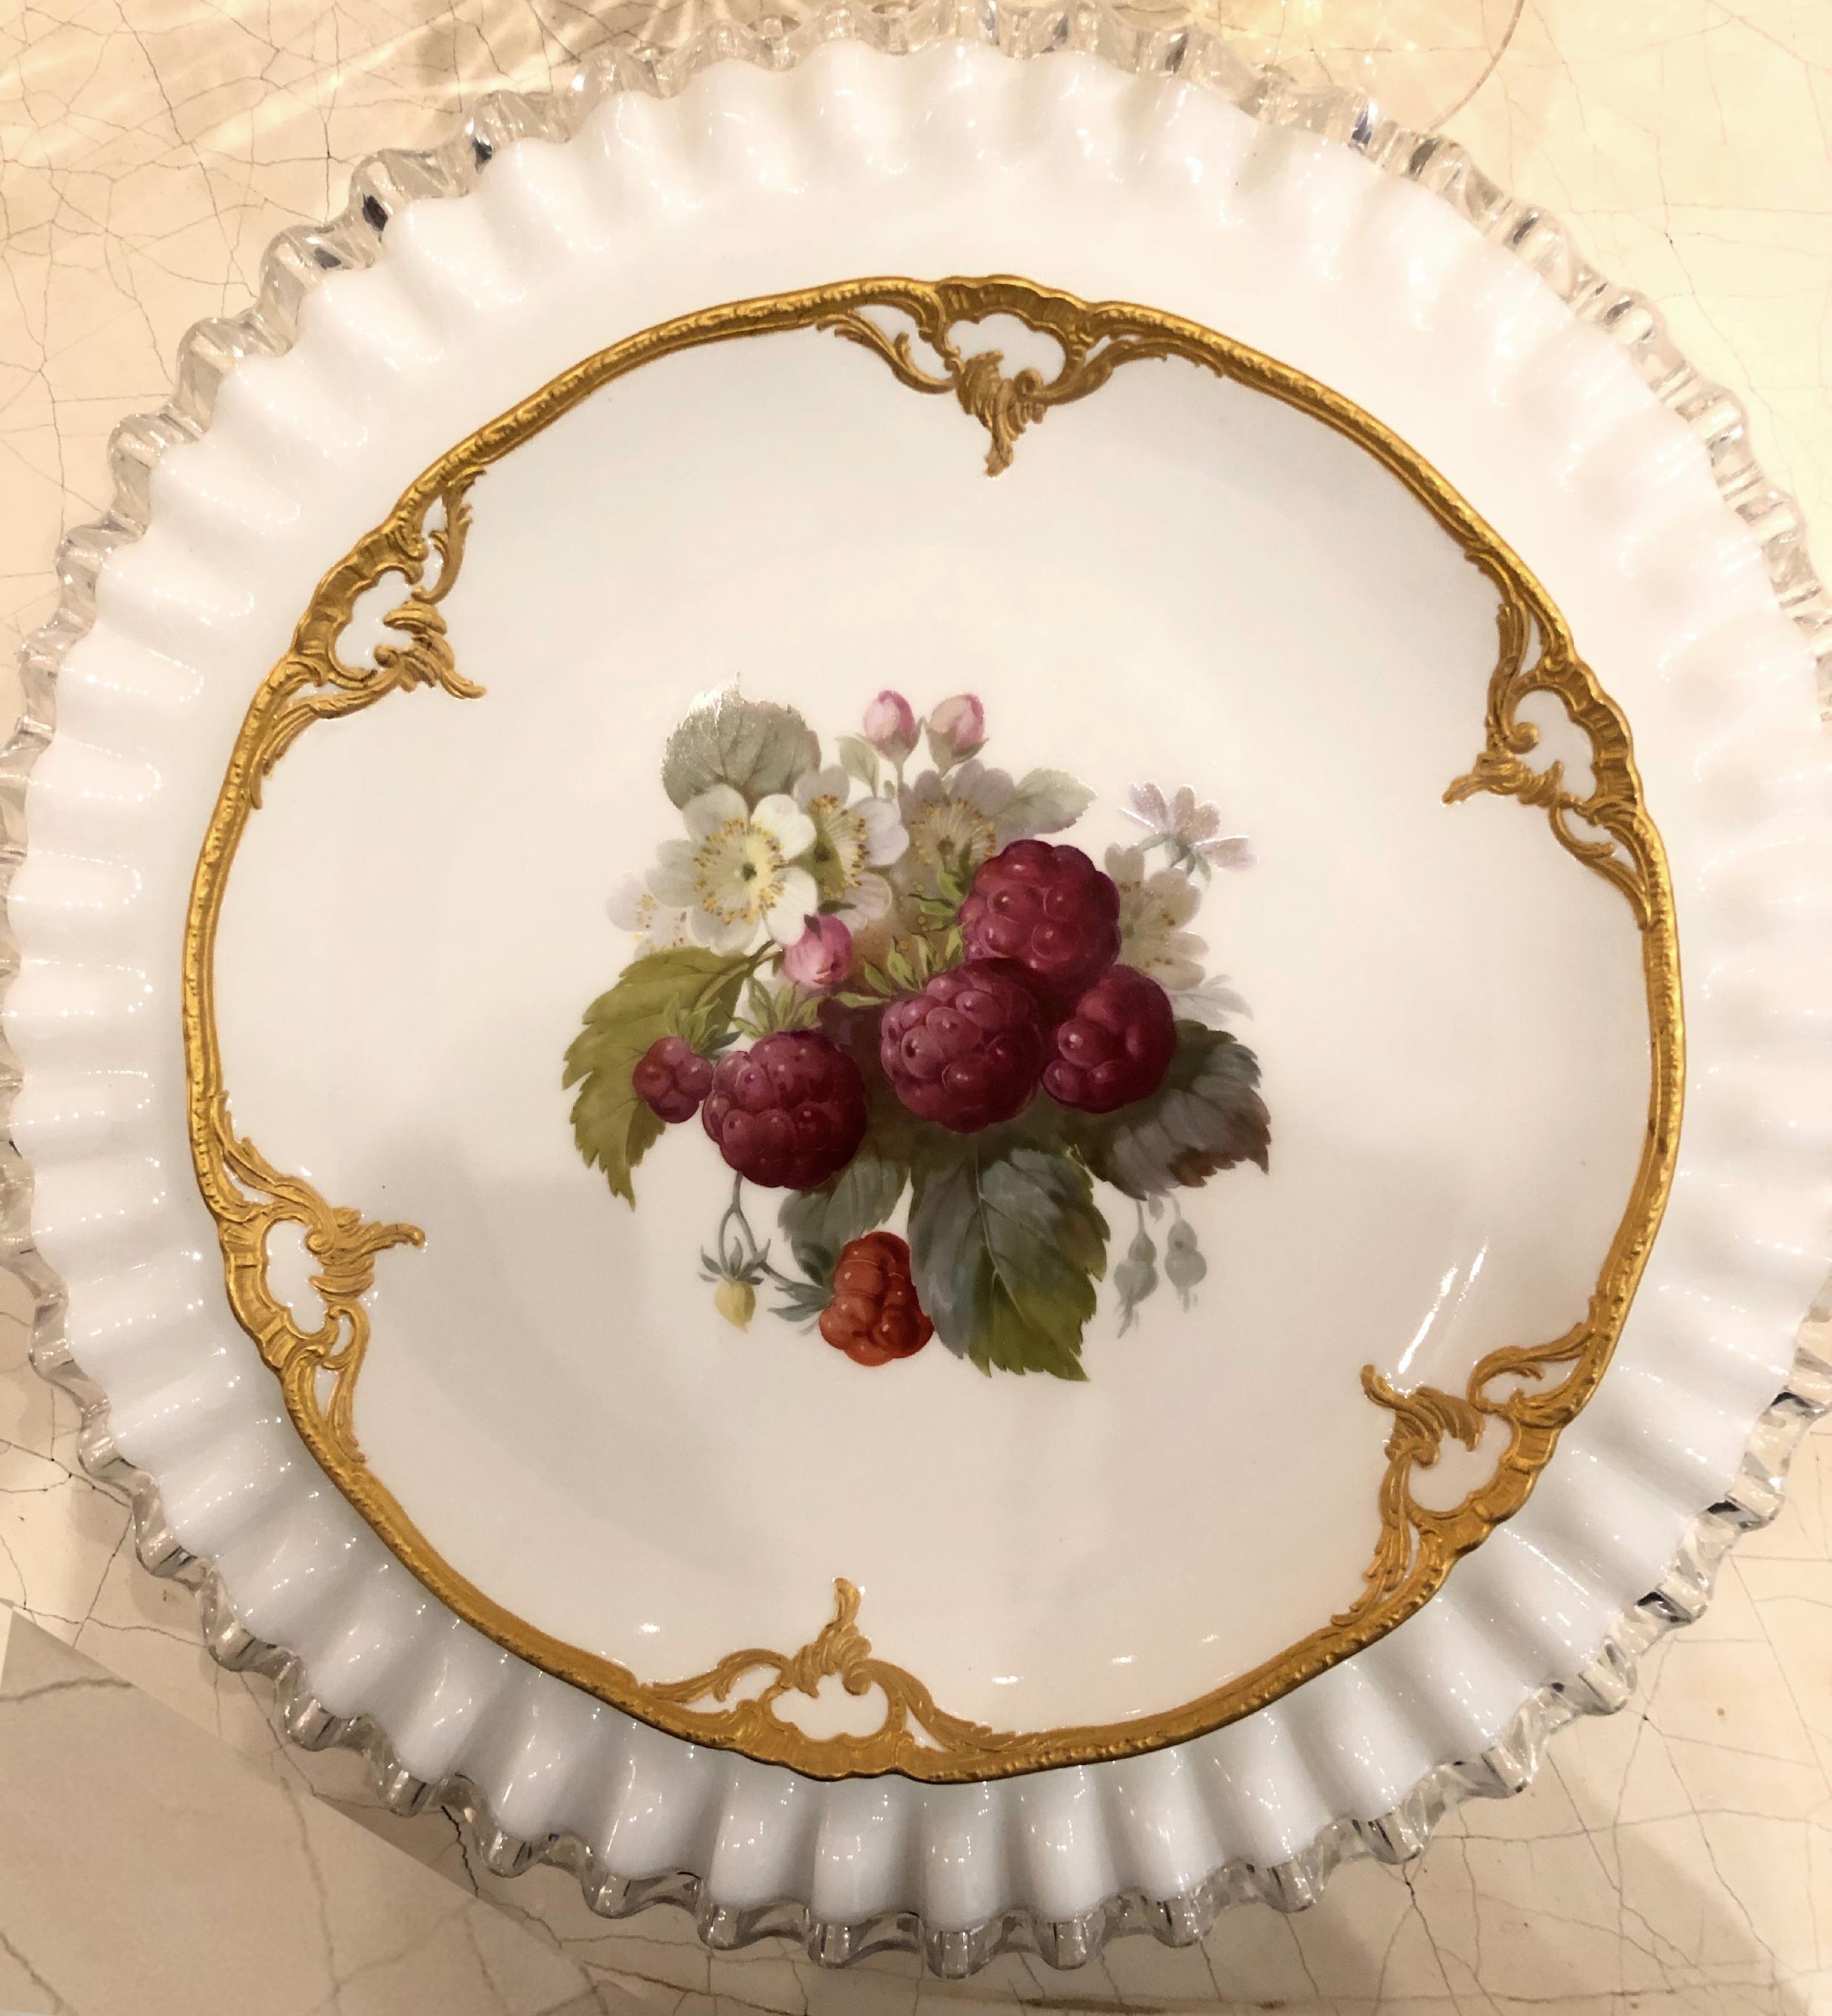 Regency Set of Eight Porcelain Dessert Plates Depicting Fruit with 14k Gold Detail